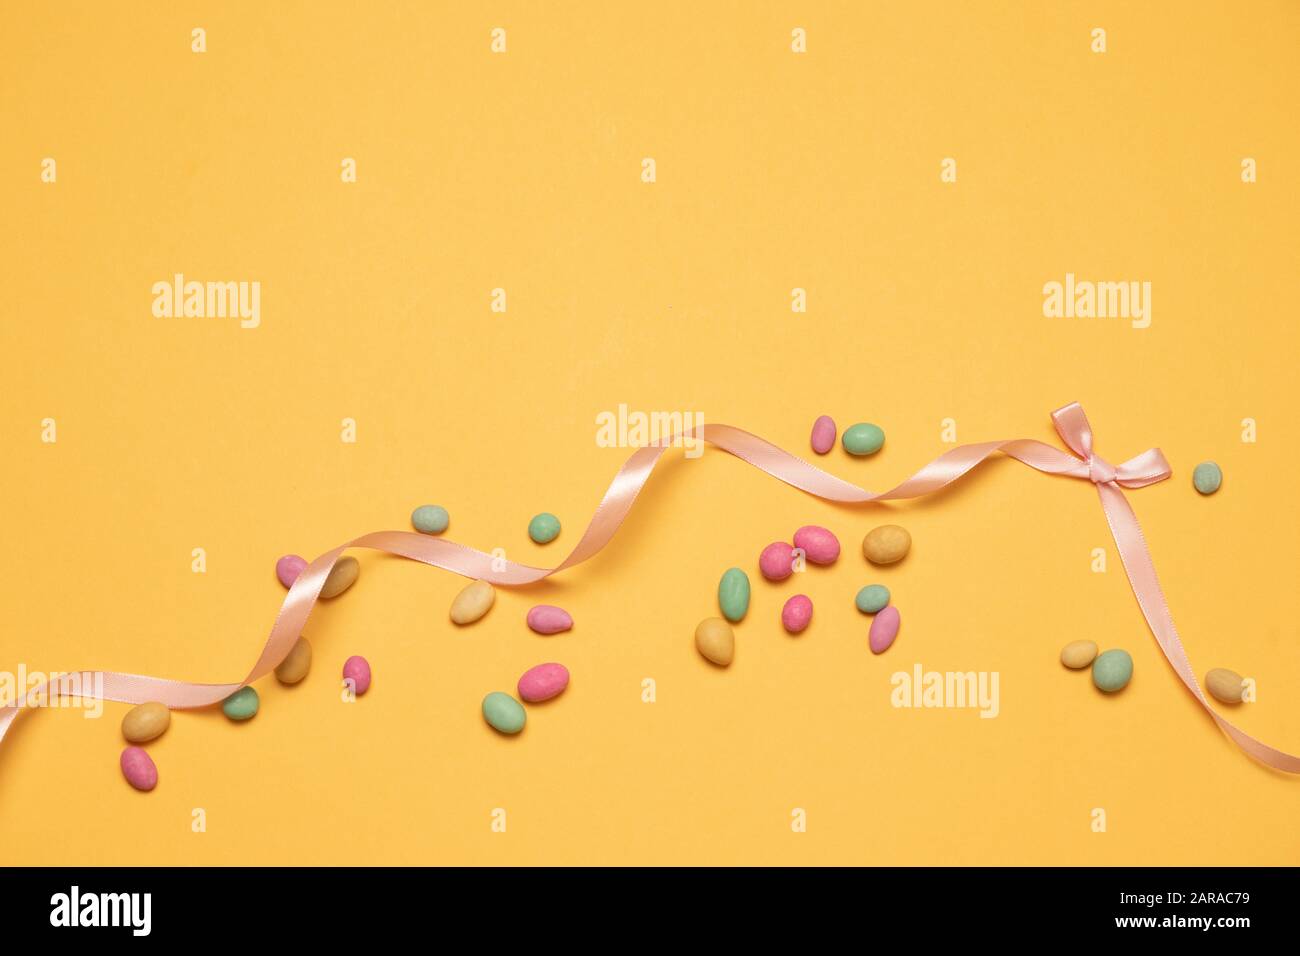 Farbige Zuckerbonbohnen und Seidenbandbogen auf gelbem Hintergrund mit Copyspace. Grußkarte für frohe ostern, Geburtstag, Muttertag, Rabattbanner Stockfoto